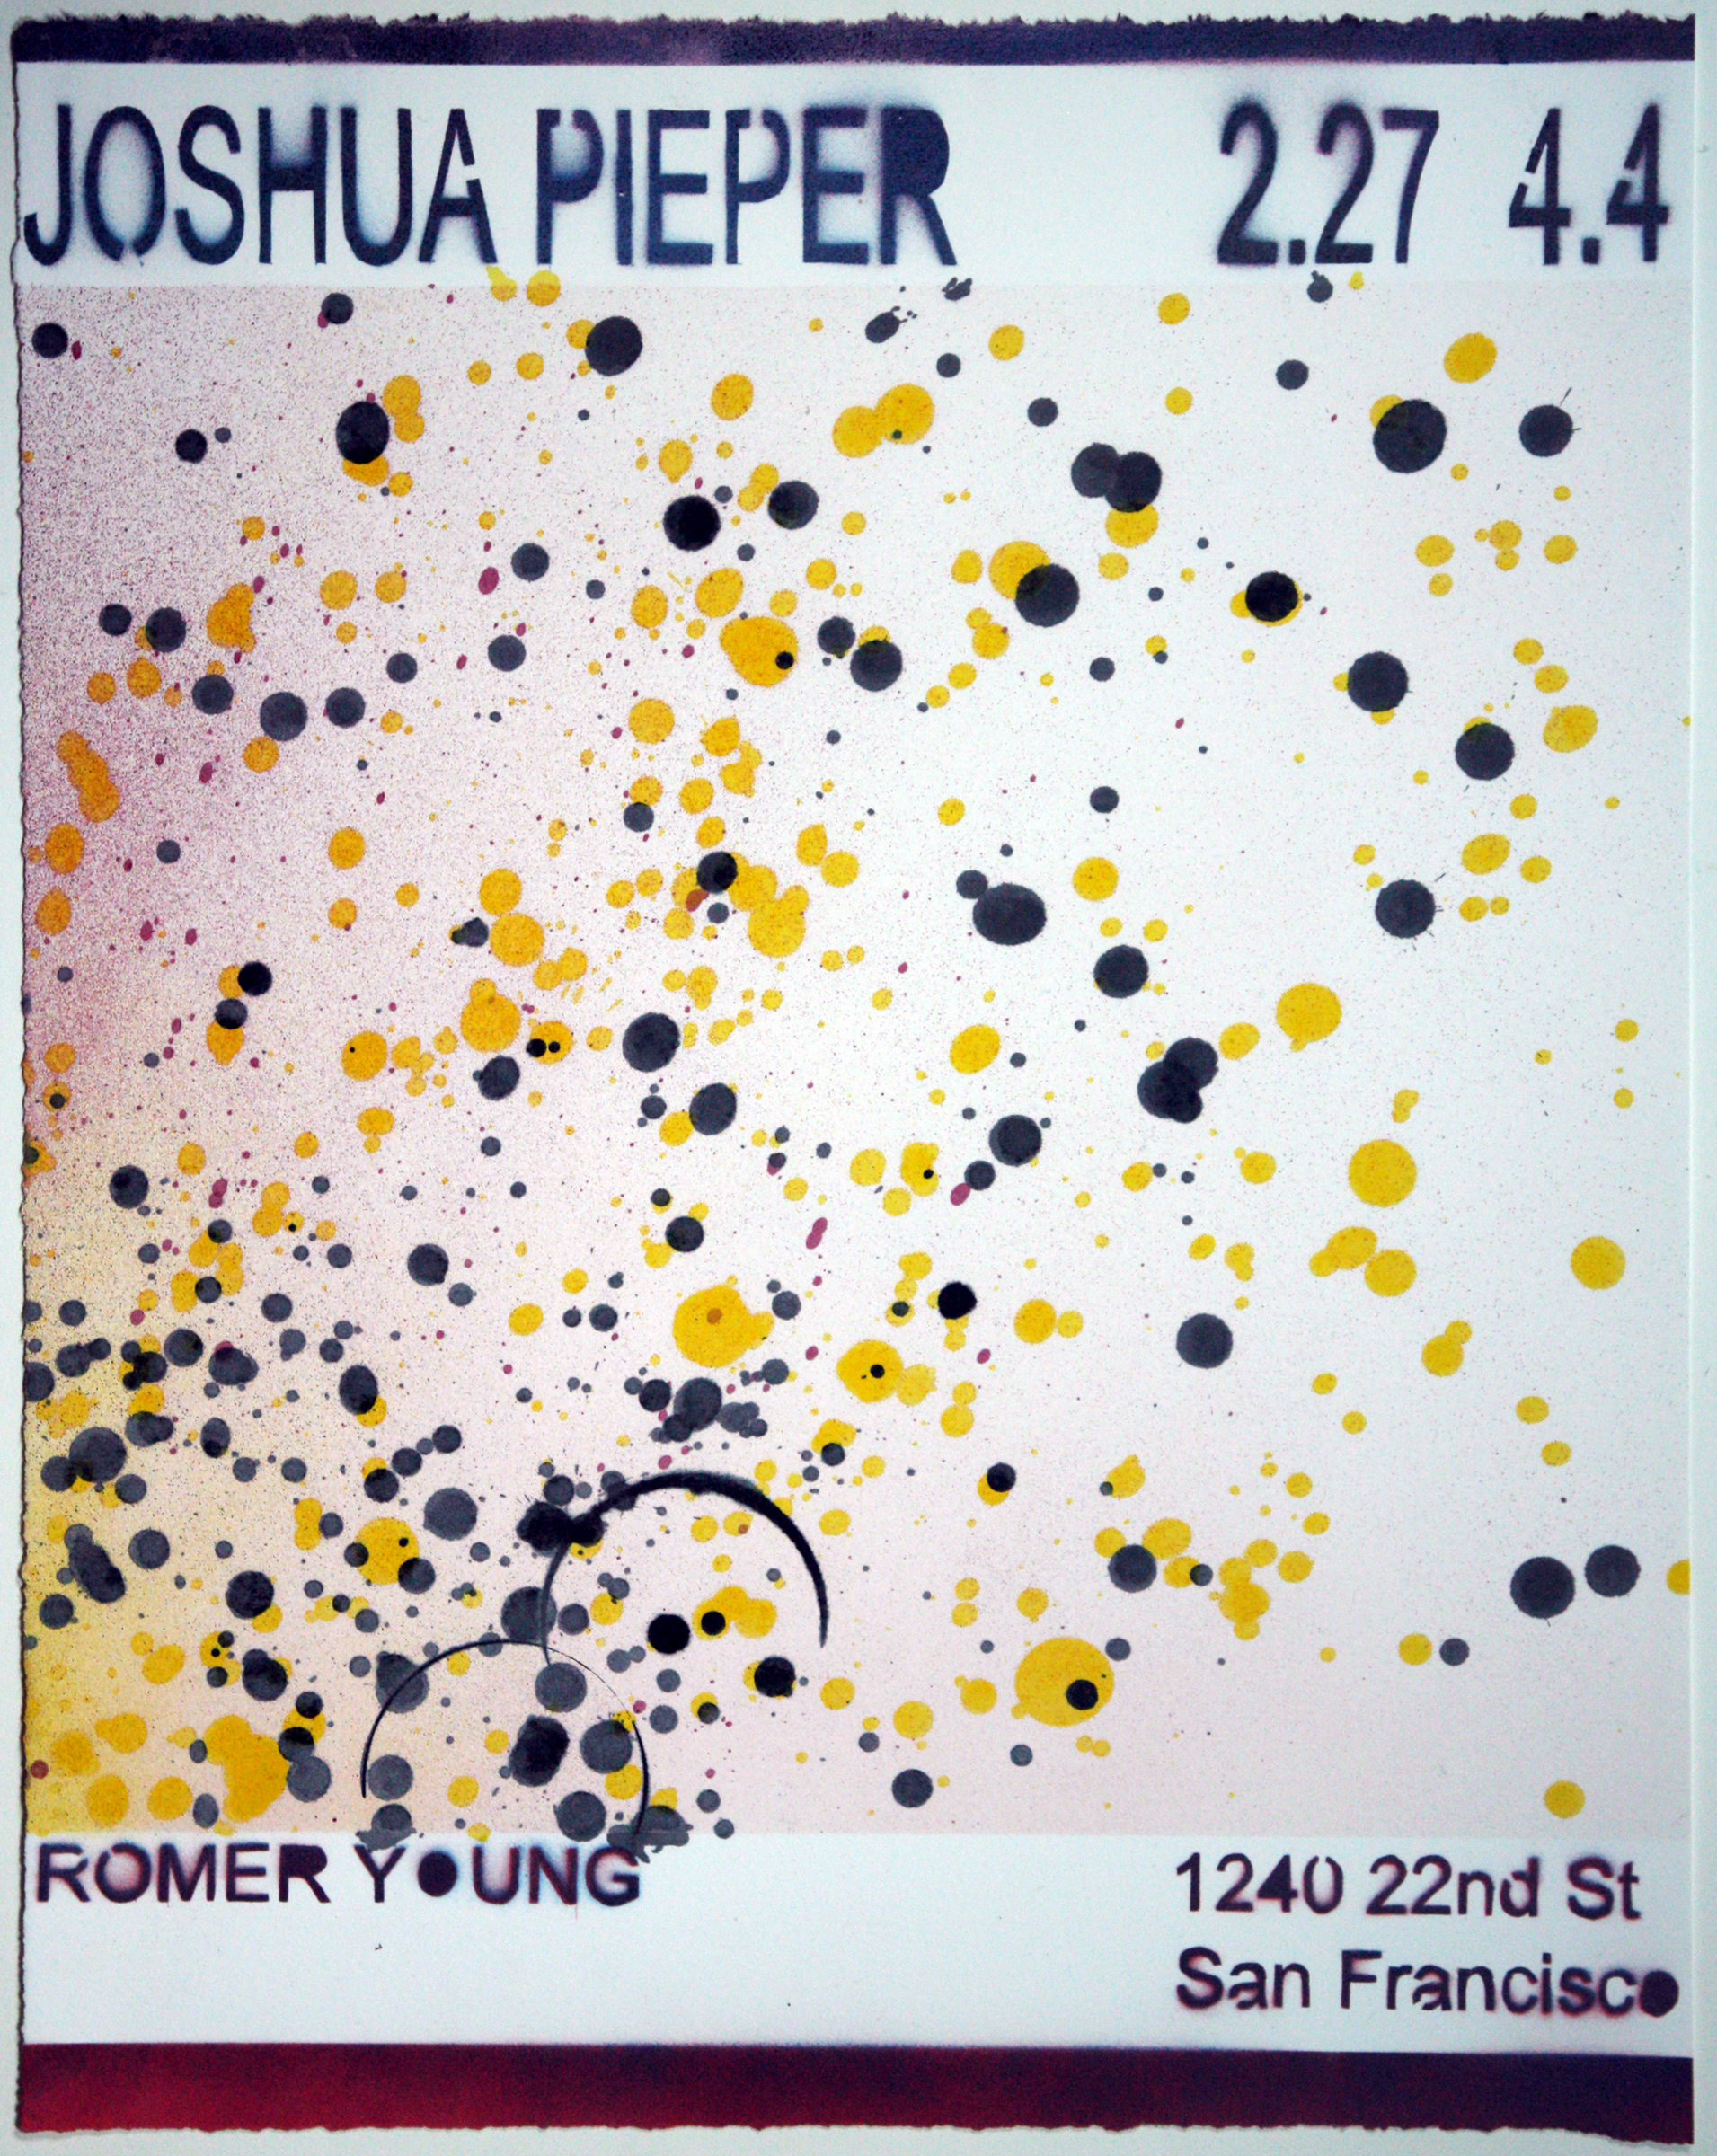   JOSHUA PIEPER   Poster 9 , 2015, spray enamel on cotton rag with frame, 21" x 17" 